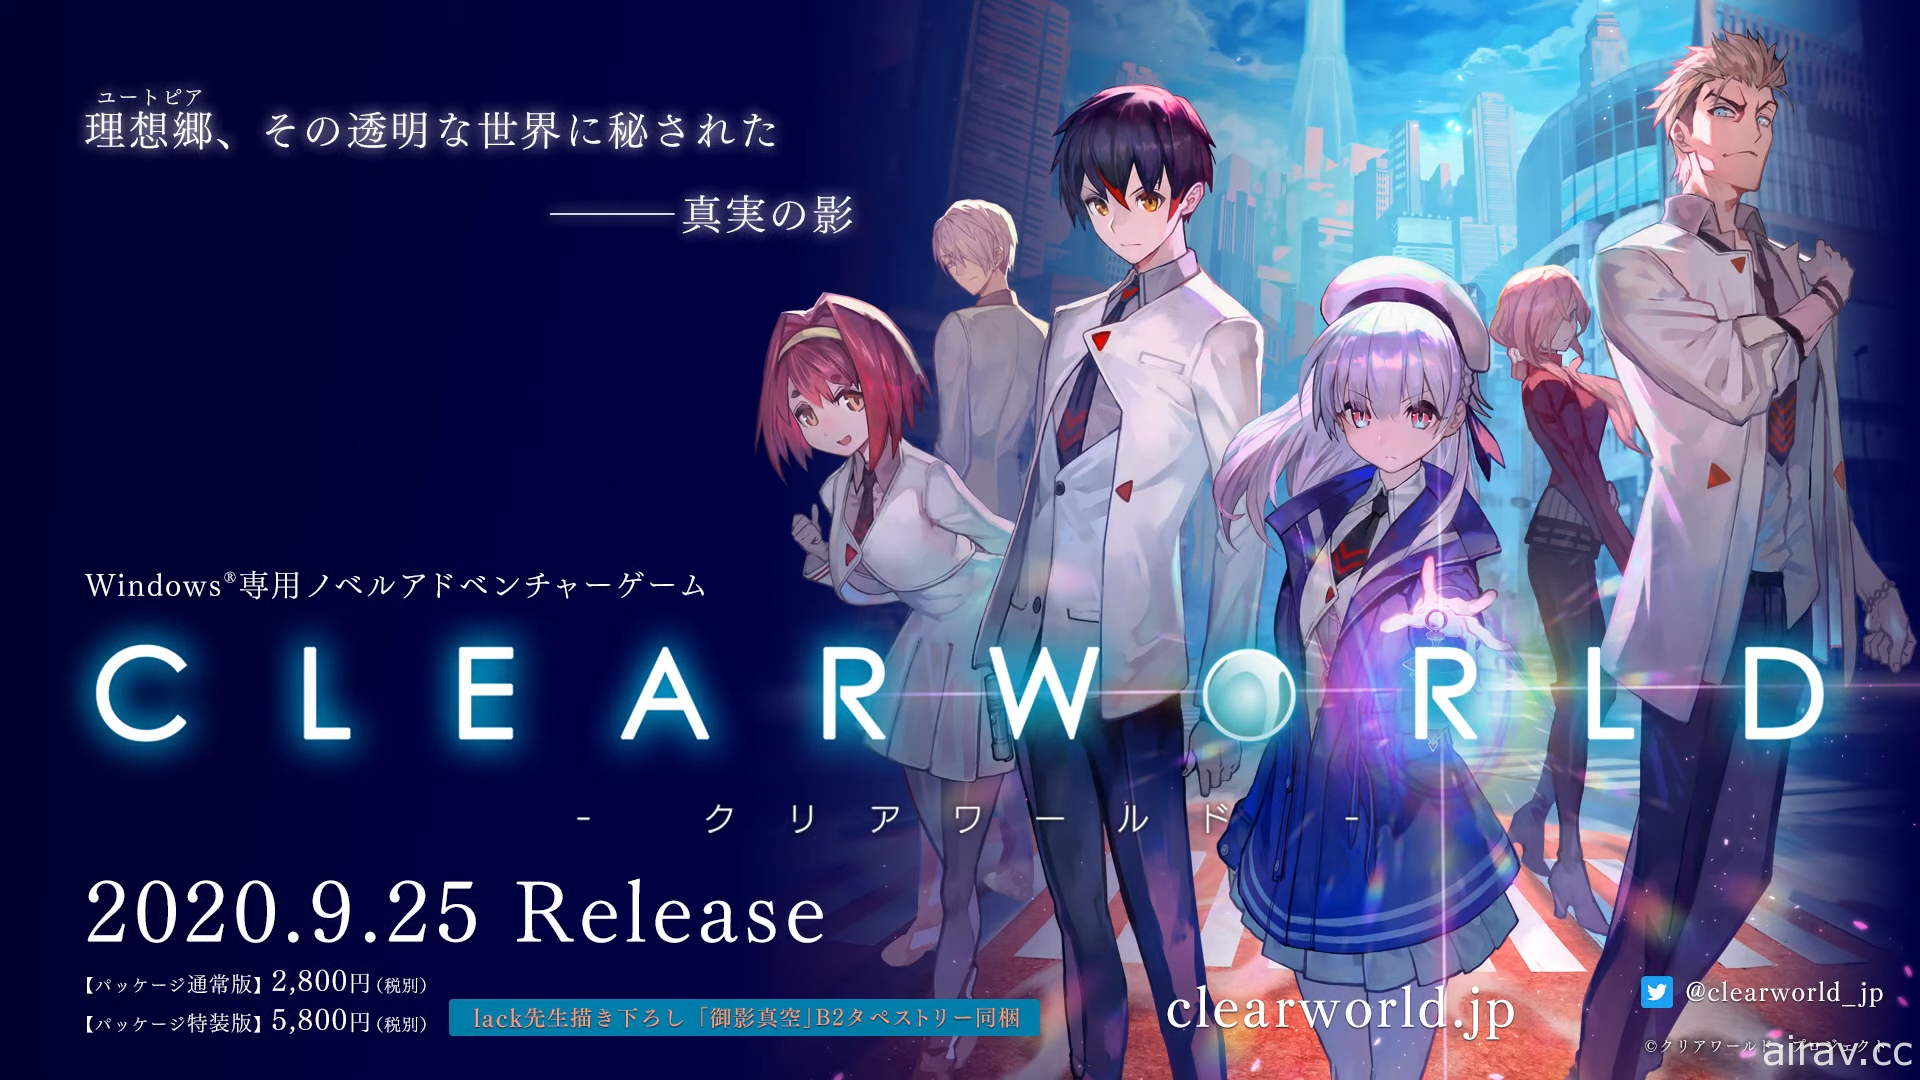 东映动画 × Plus81 视觉小说游戏新作《CLEARWORLD》公开宣传影片